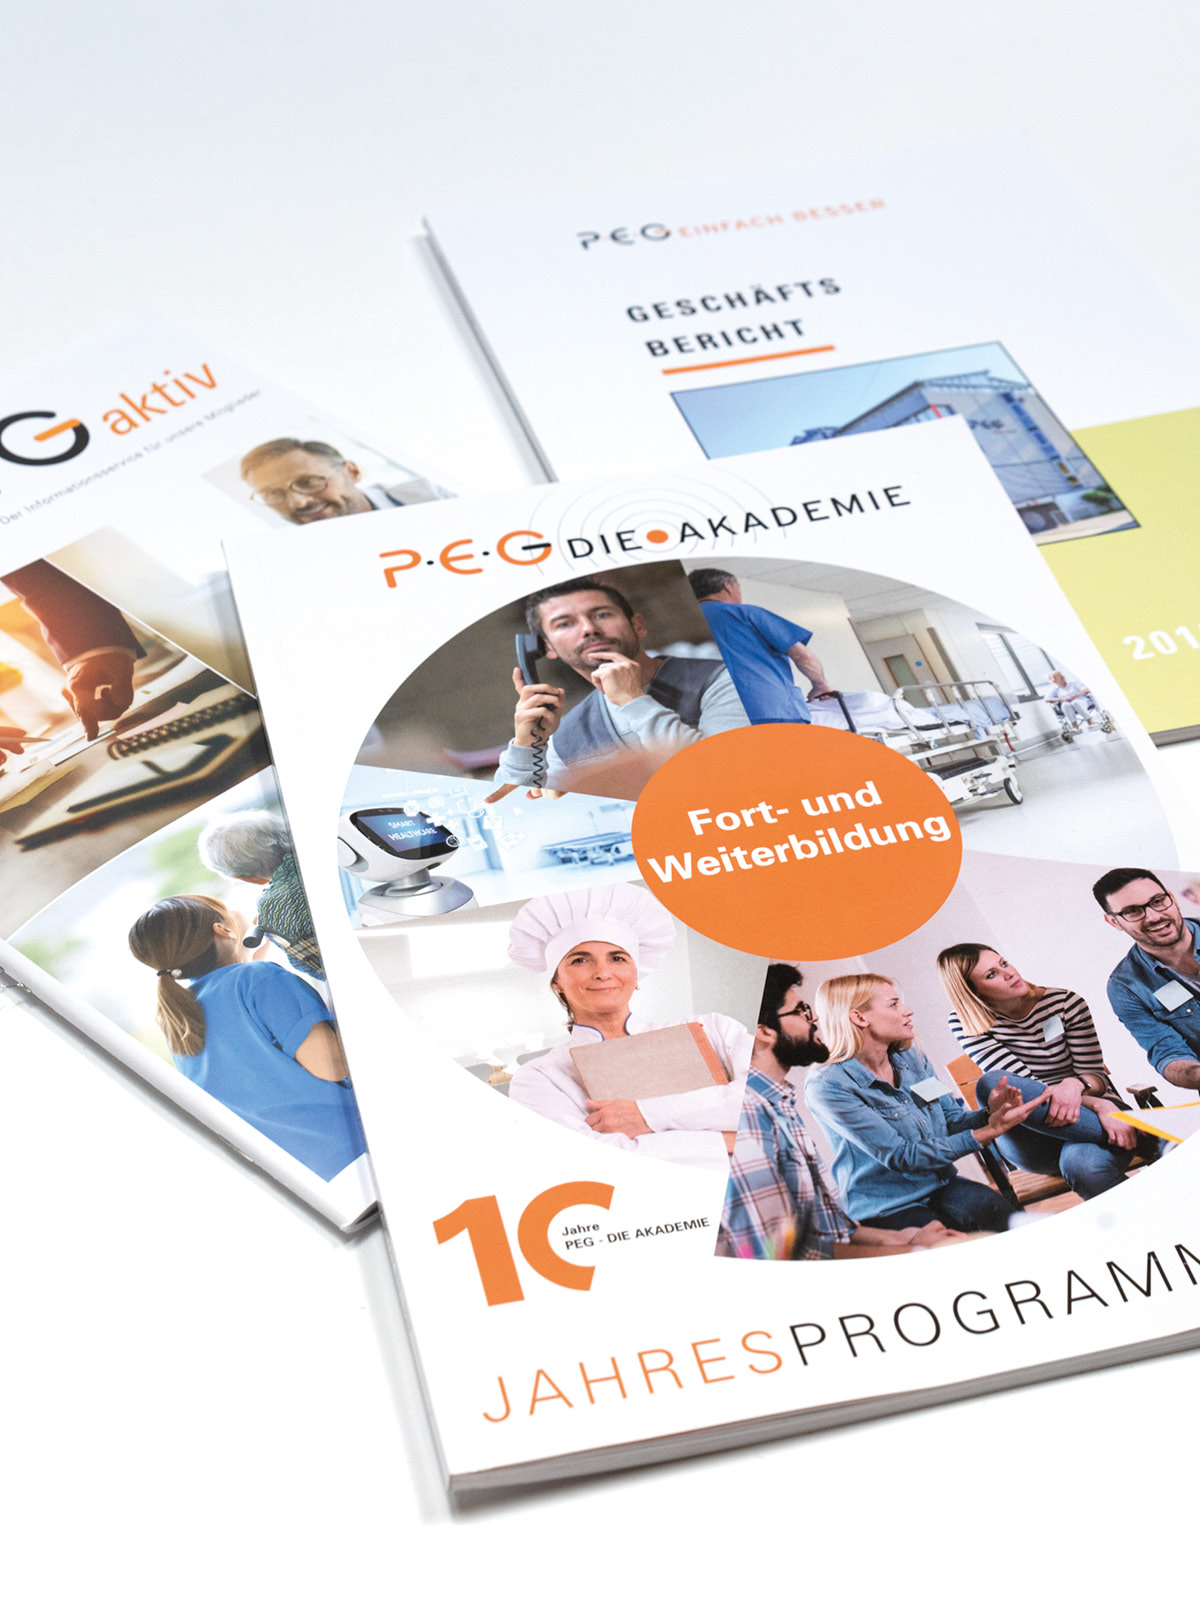 Design der Titelseiten für das Jahresprogramm, den Geschäftsbericht und das PEG aktiv.